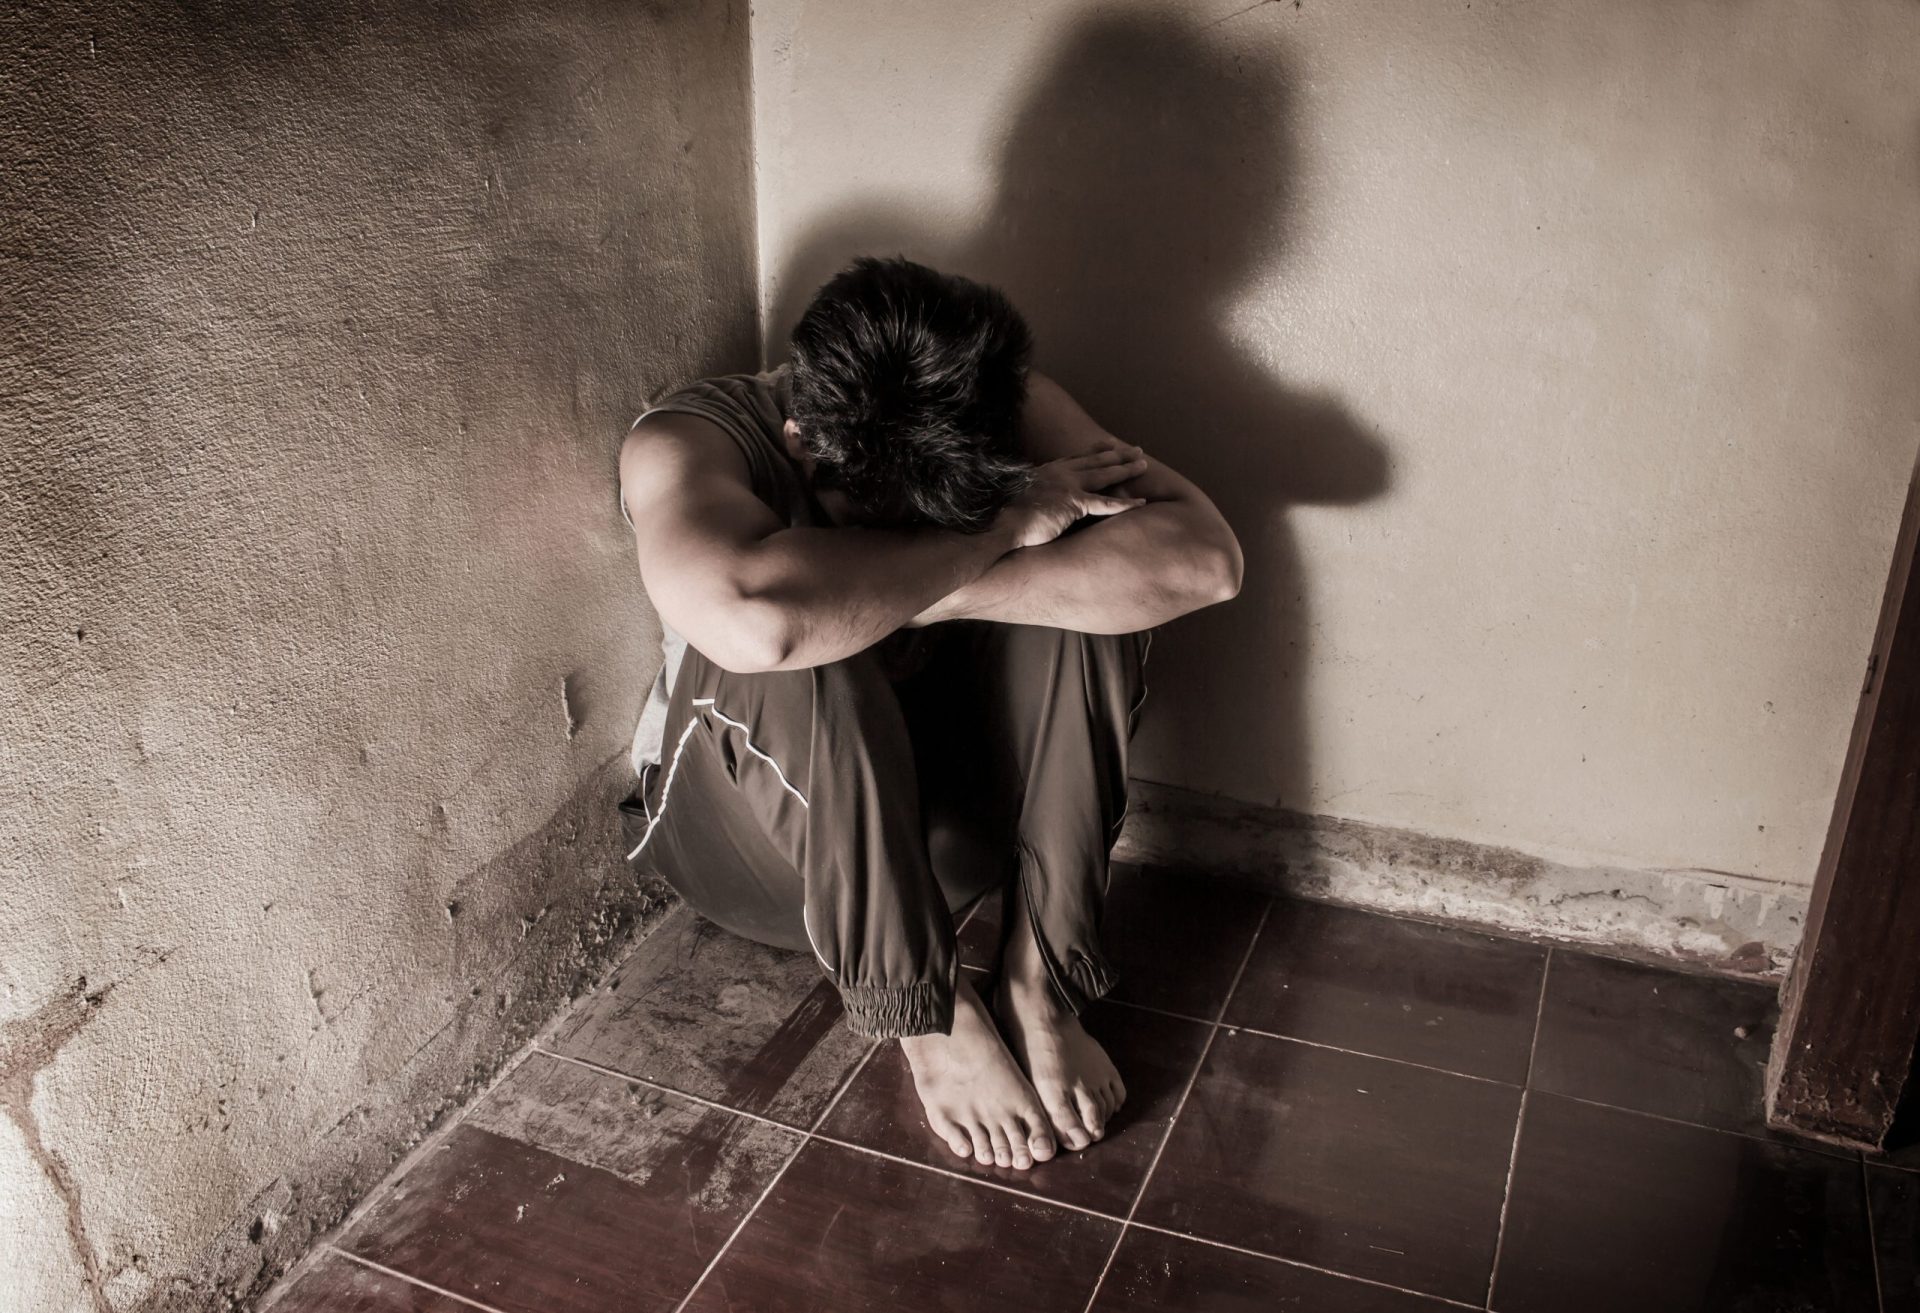 18 meses de prisão para mulher que torturou namorado